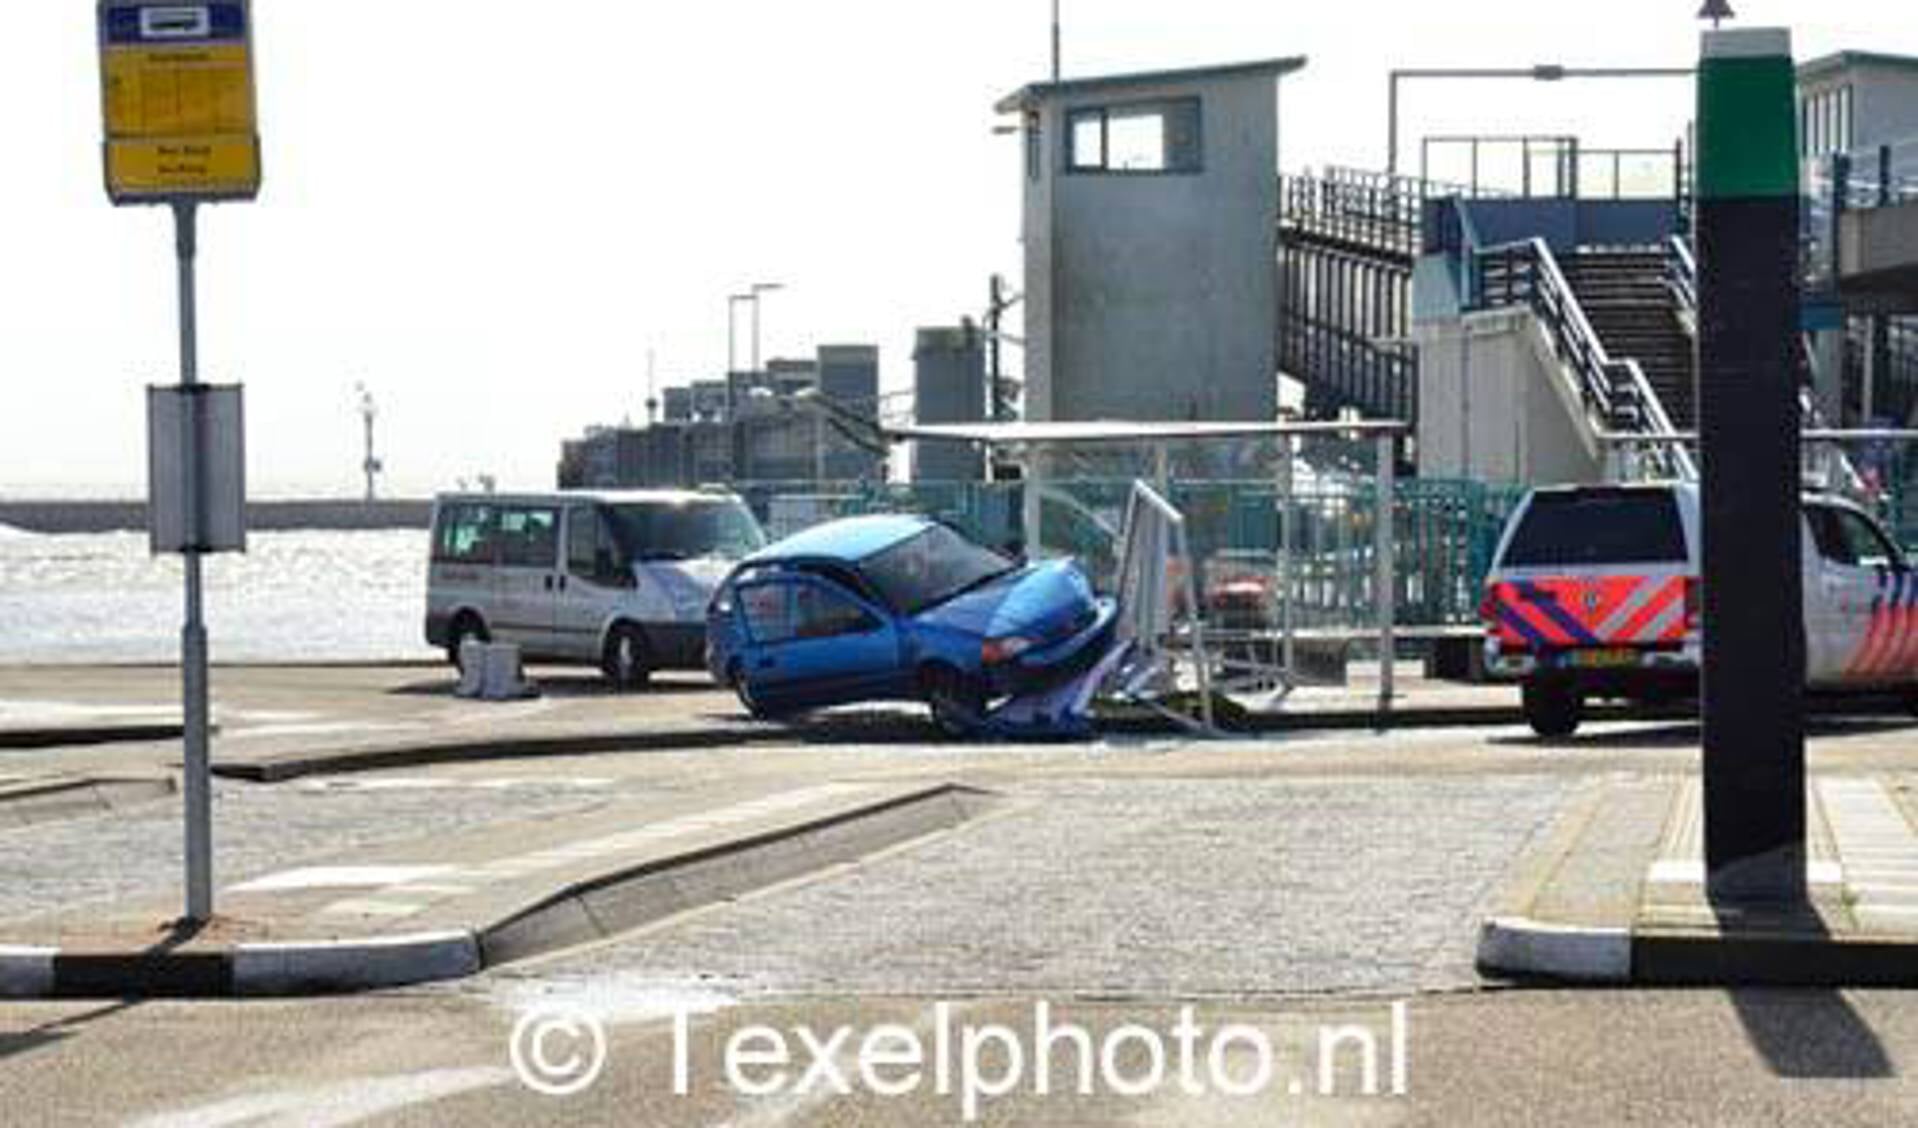 Een auto ramde zondag eerste paasdag een bushokje. Foto Marcel Winter/Texelphoto.nl